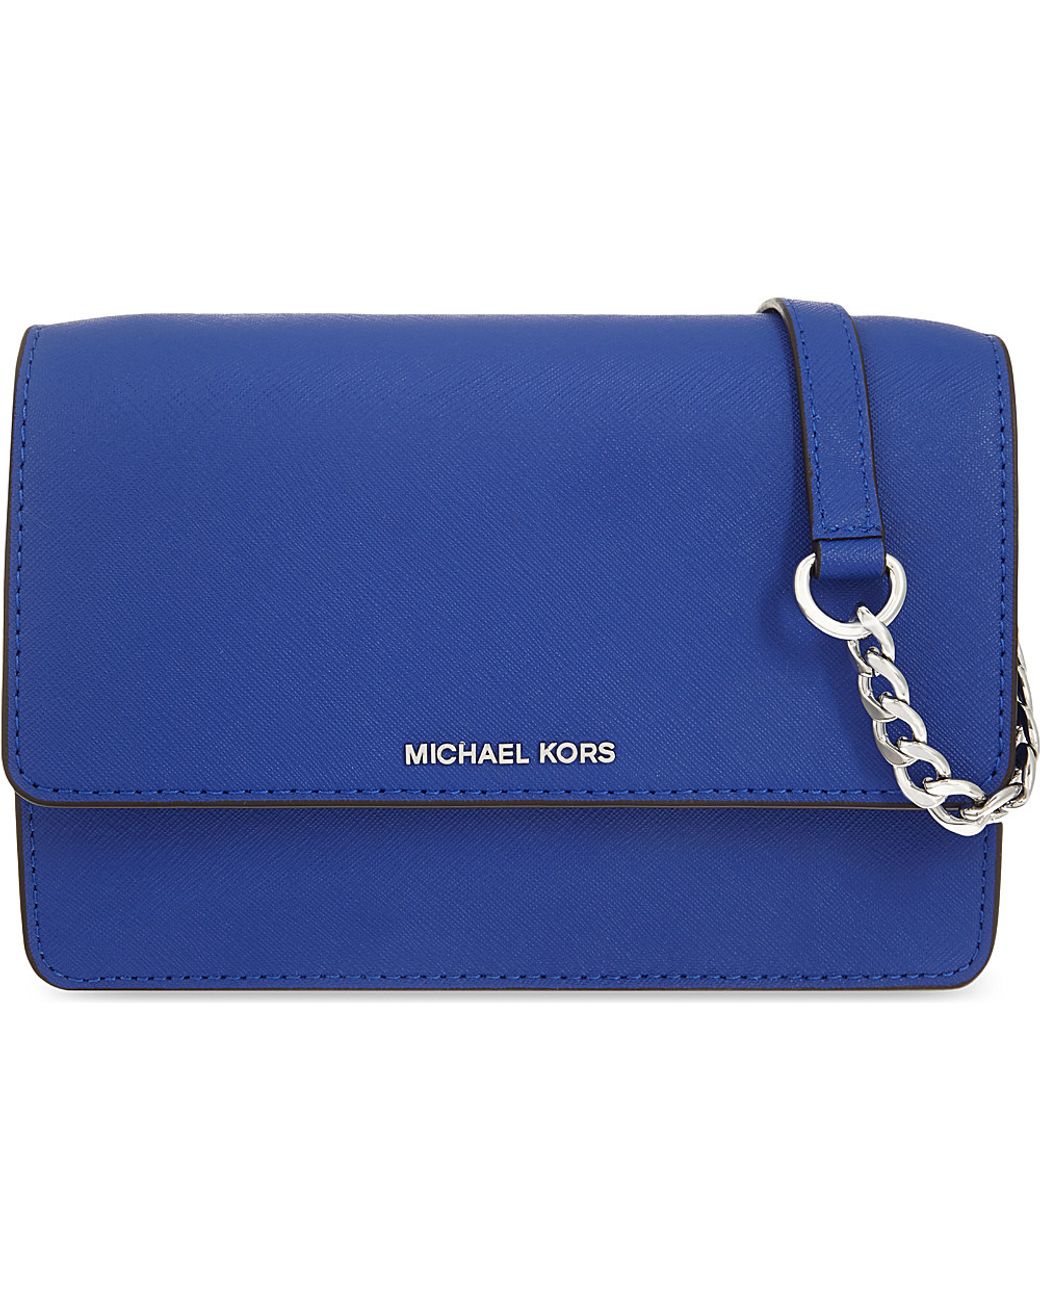 Michael Michael Kors 'Daniela' shoulder bag, Women's Bags